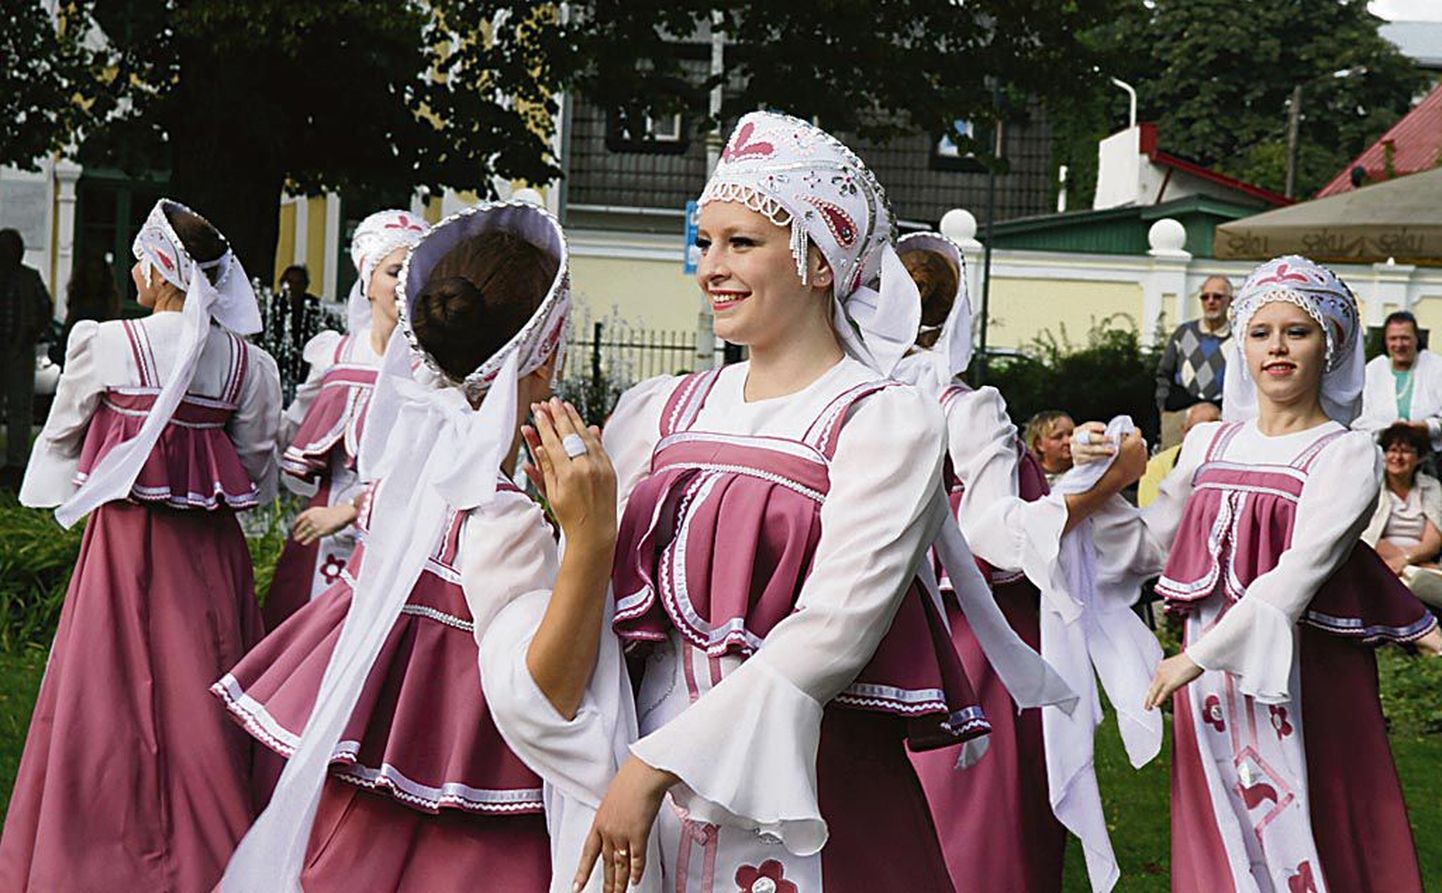 Viimati toimus slaavi kultuuri festival “Svetotš” Pärnus kolm aastat tagasi. Lauljad-tantsijad esinevad linnas ka tänavusel festivalil.